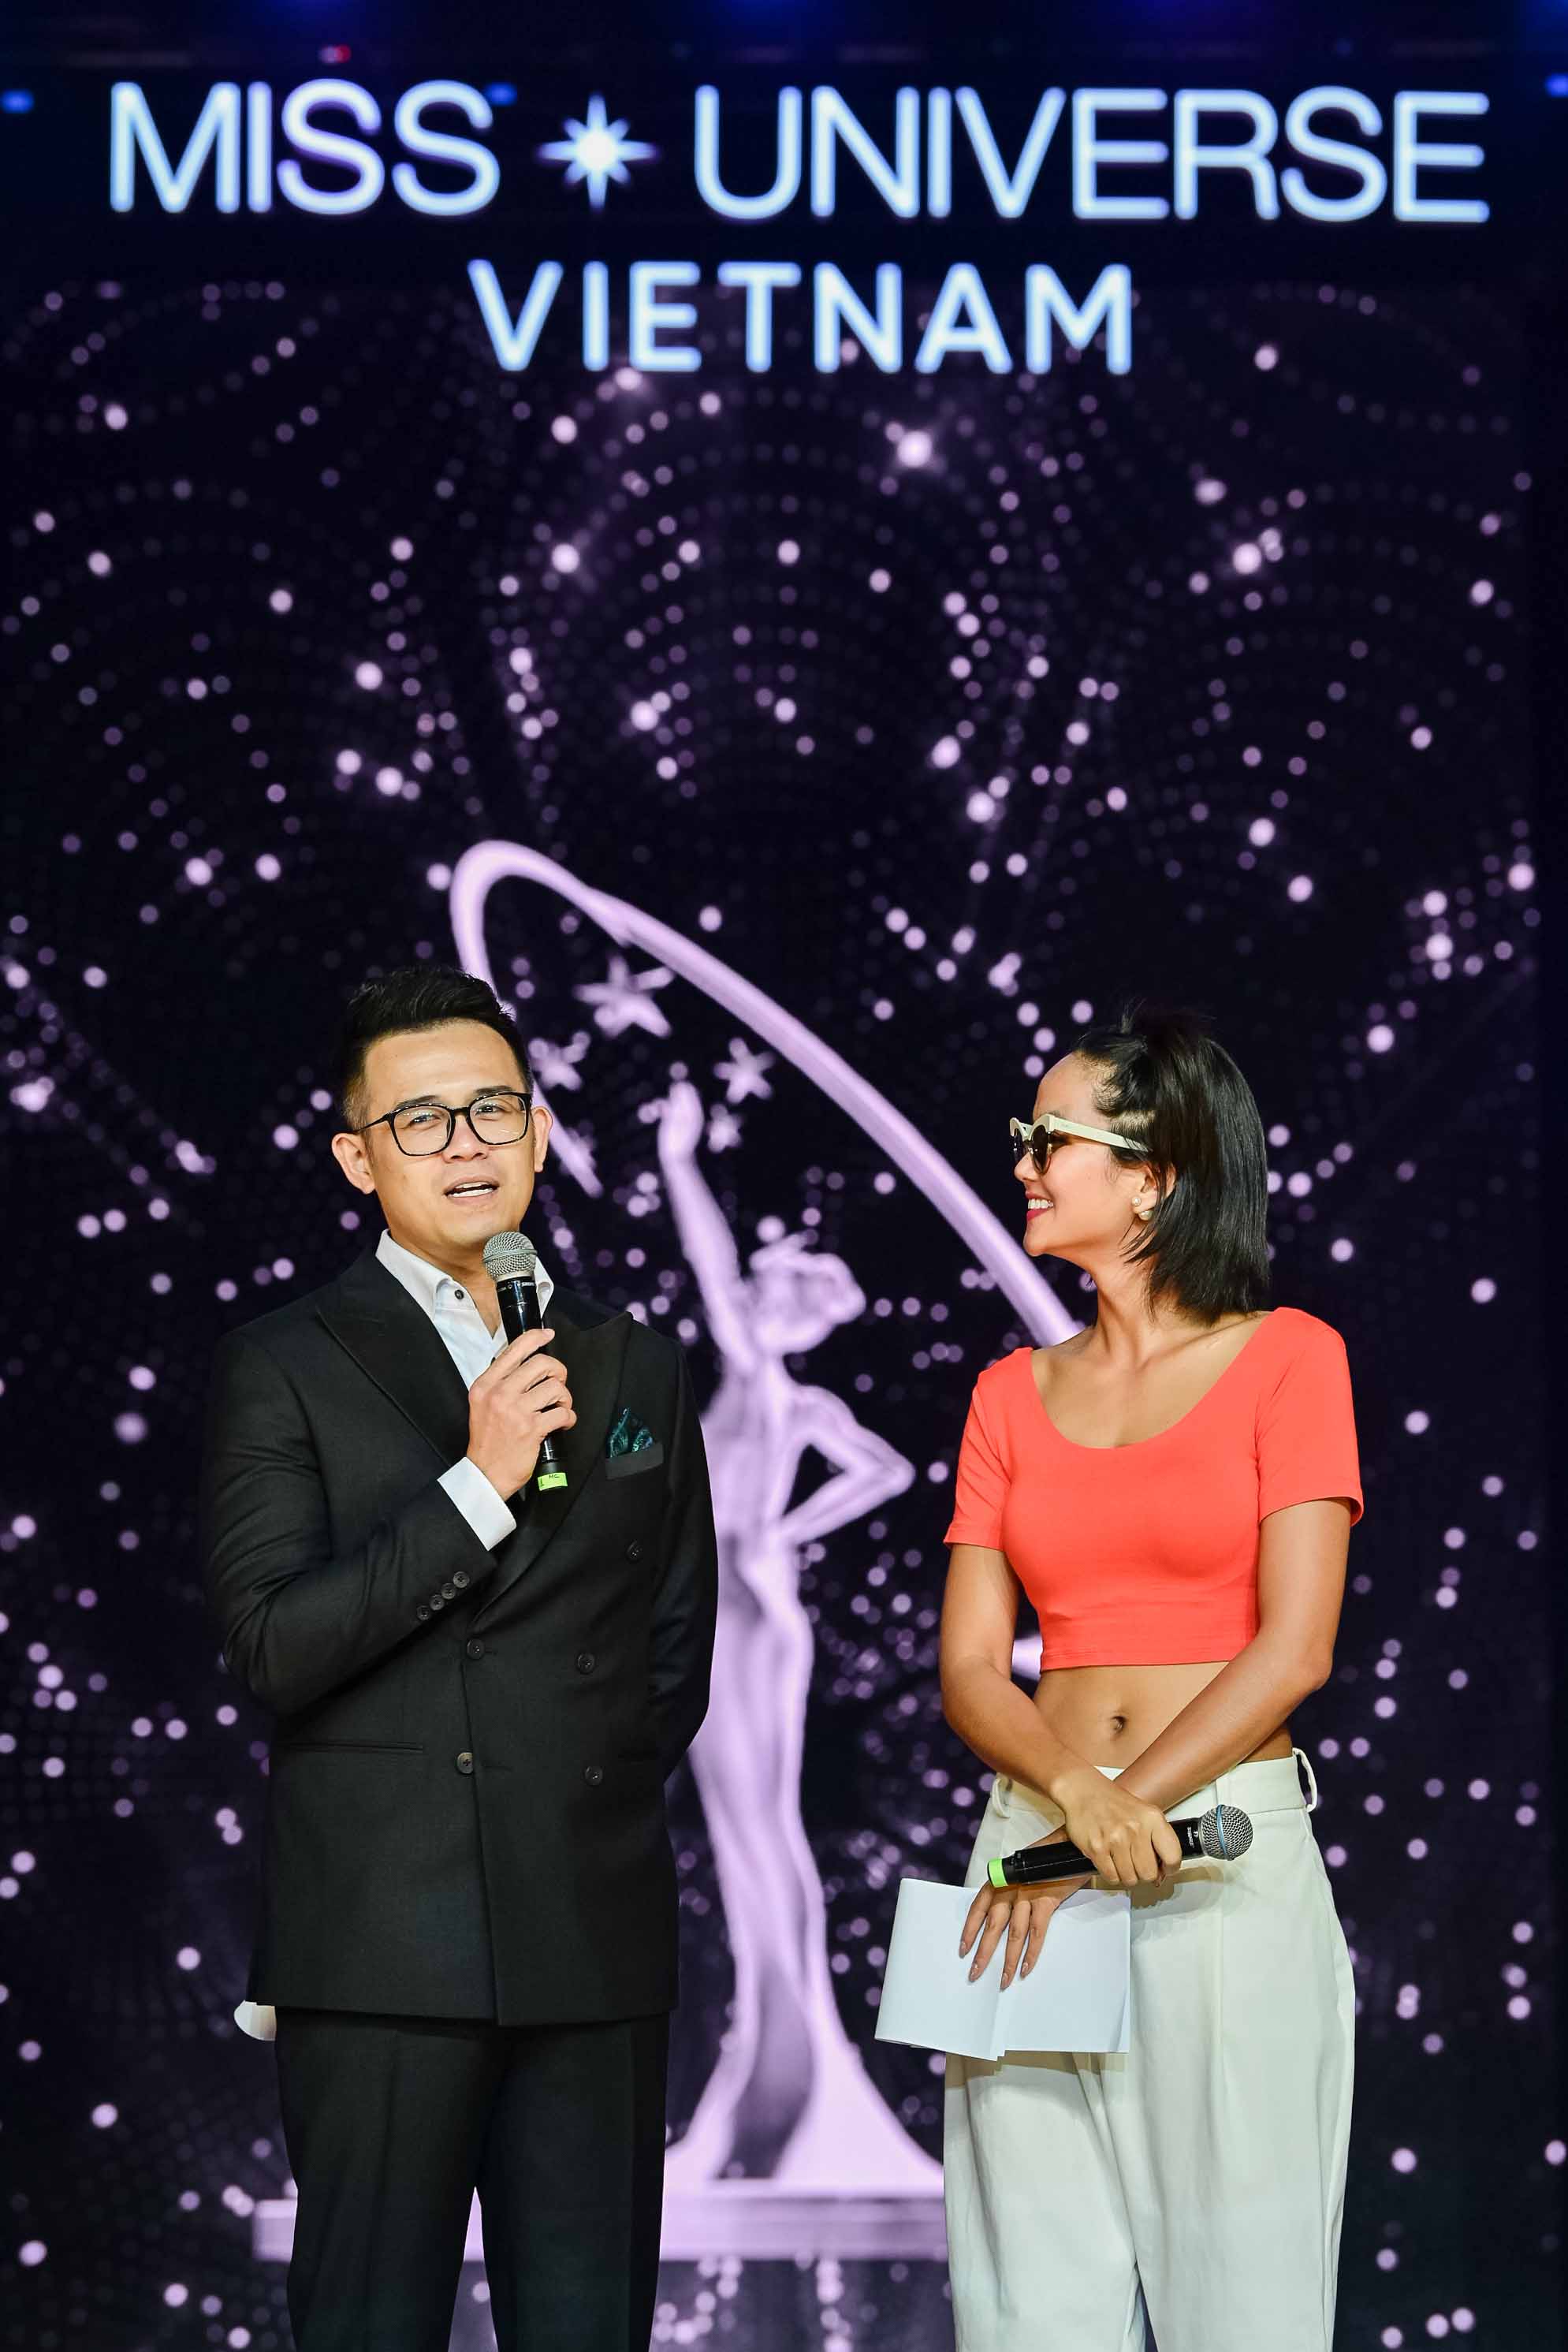 Nàng hậu đã có những khoảnh khắc vô cùng đáng yêu trên sân khấu Miss Universe Việt Nam 2019